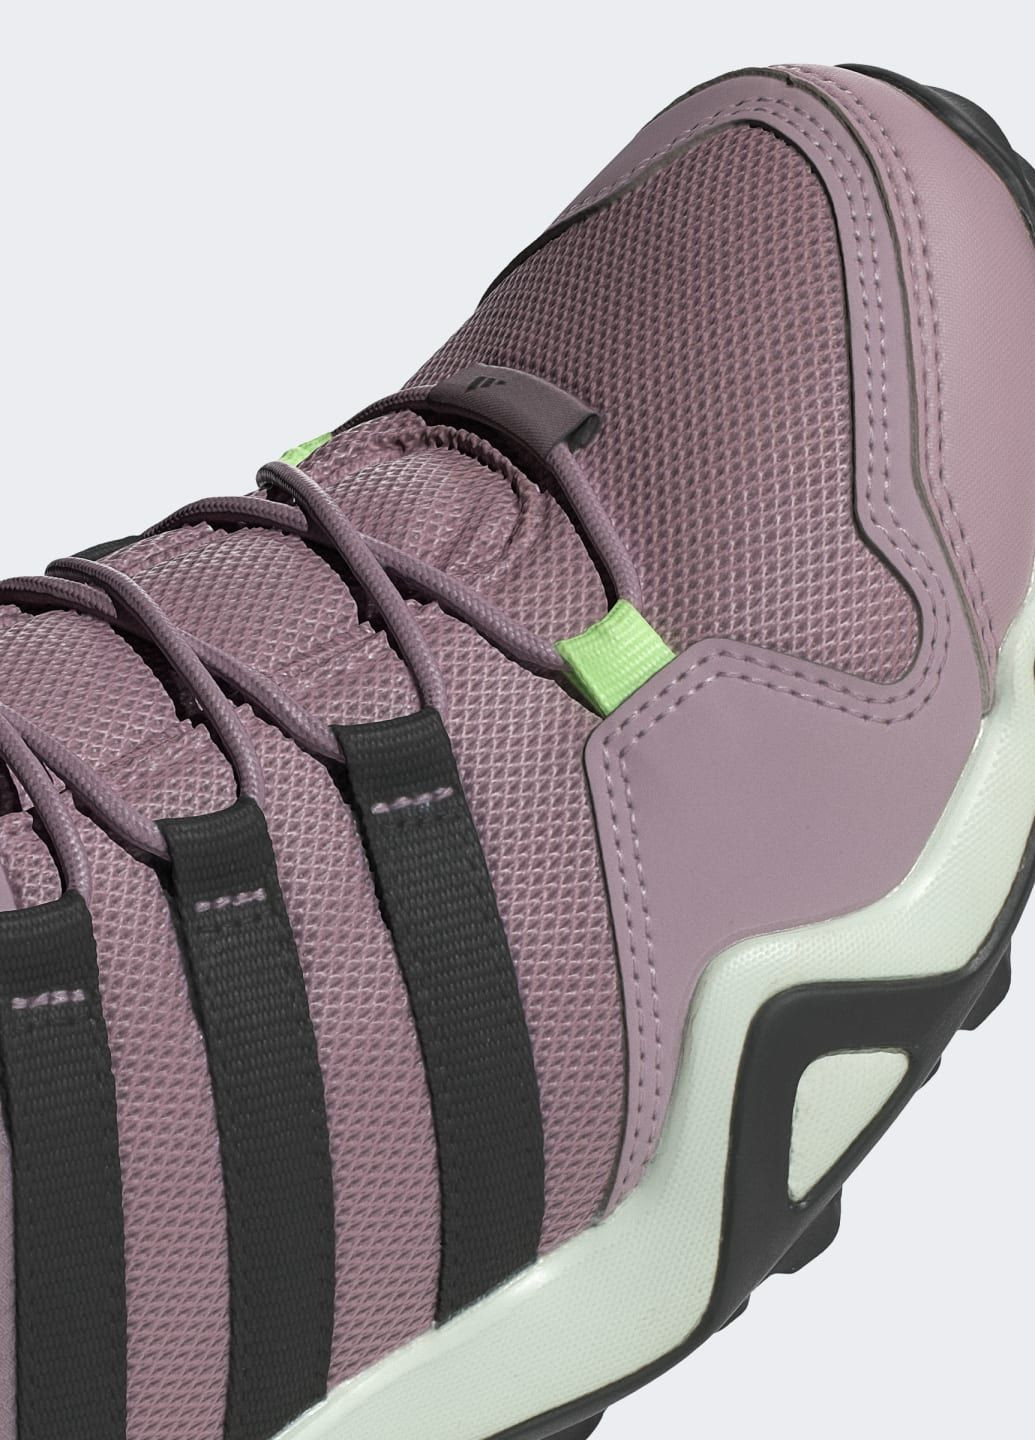 Фиолетовые всесезонные кроссовки для хайкинга ax2s adidas